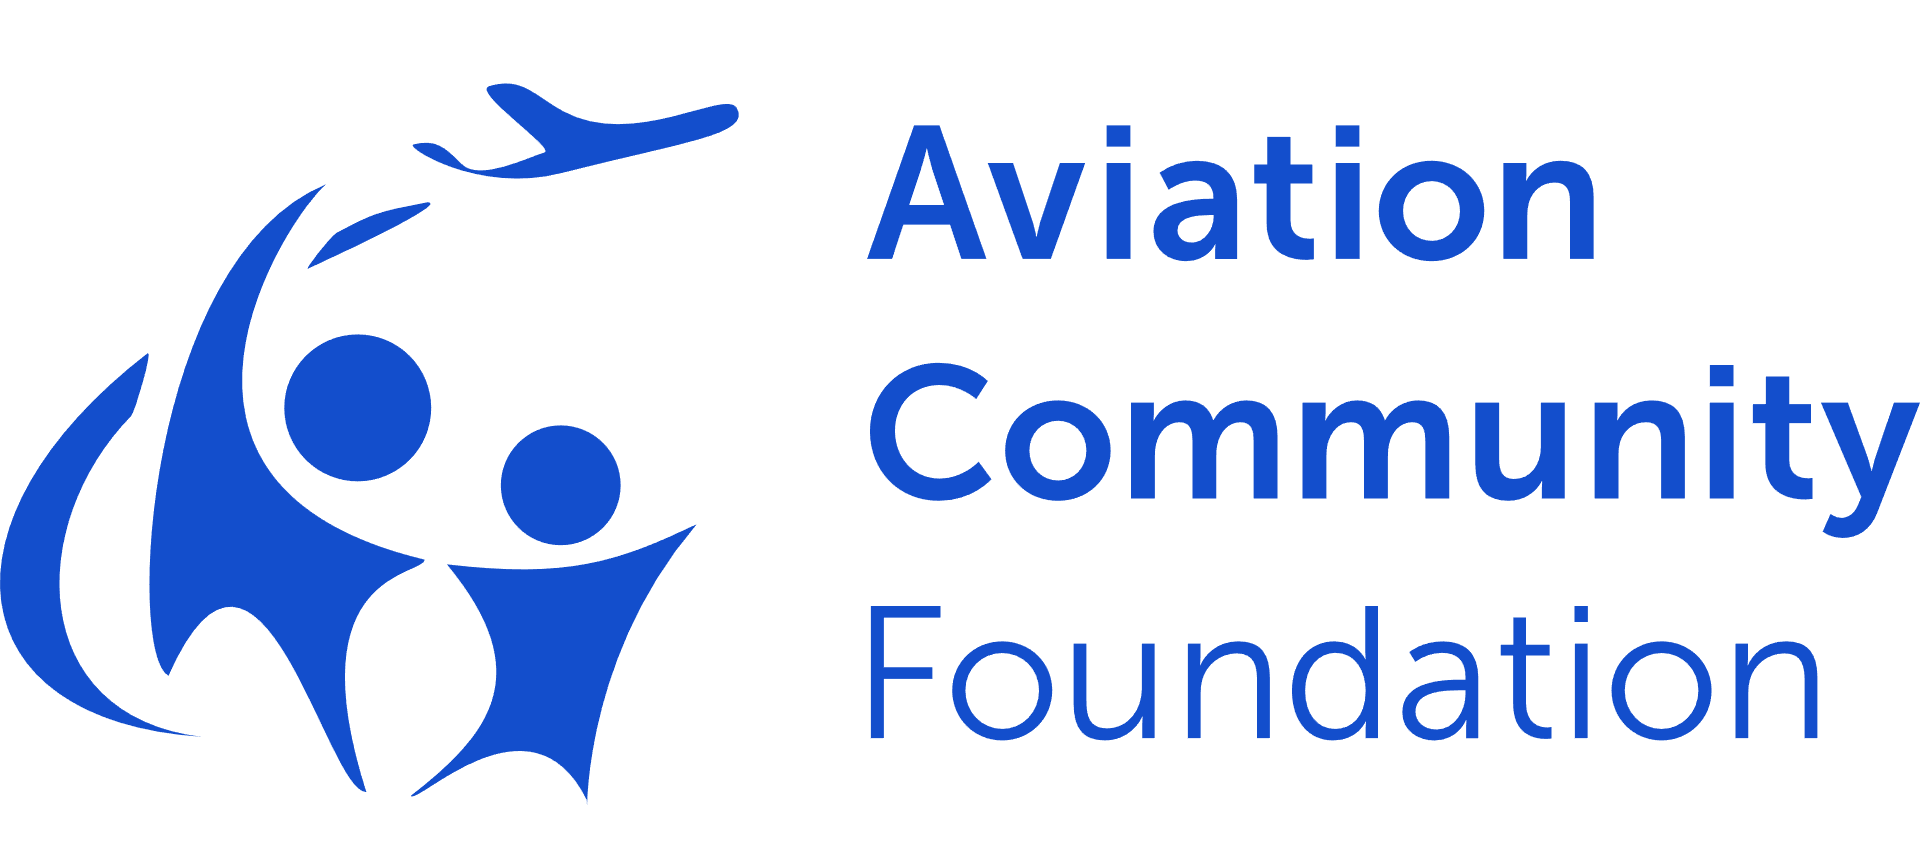 Aviation Community Foundation logo